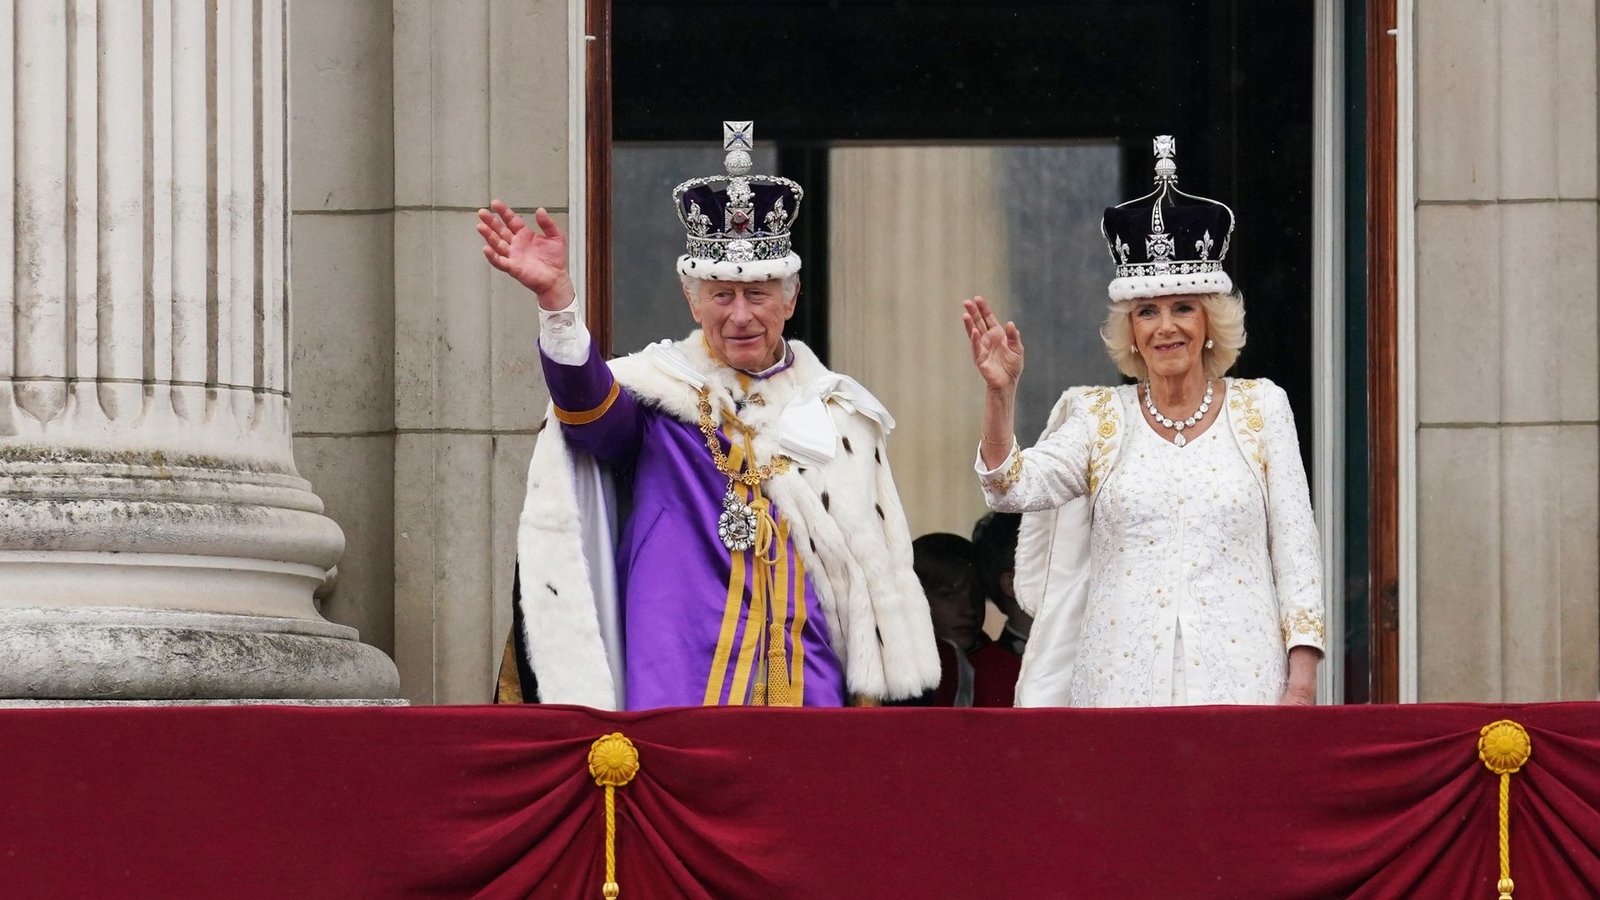 König Charles III. und Königin Camilla  nach der Krönungszeremonie auf dem Balkon des Buckingham Palastes.Foto: Owen Humphreys/PA Wire/dpa